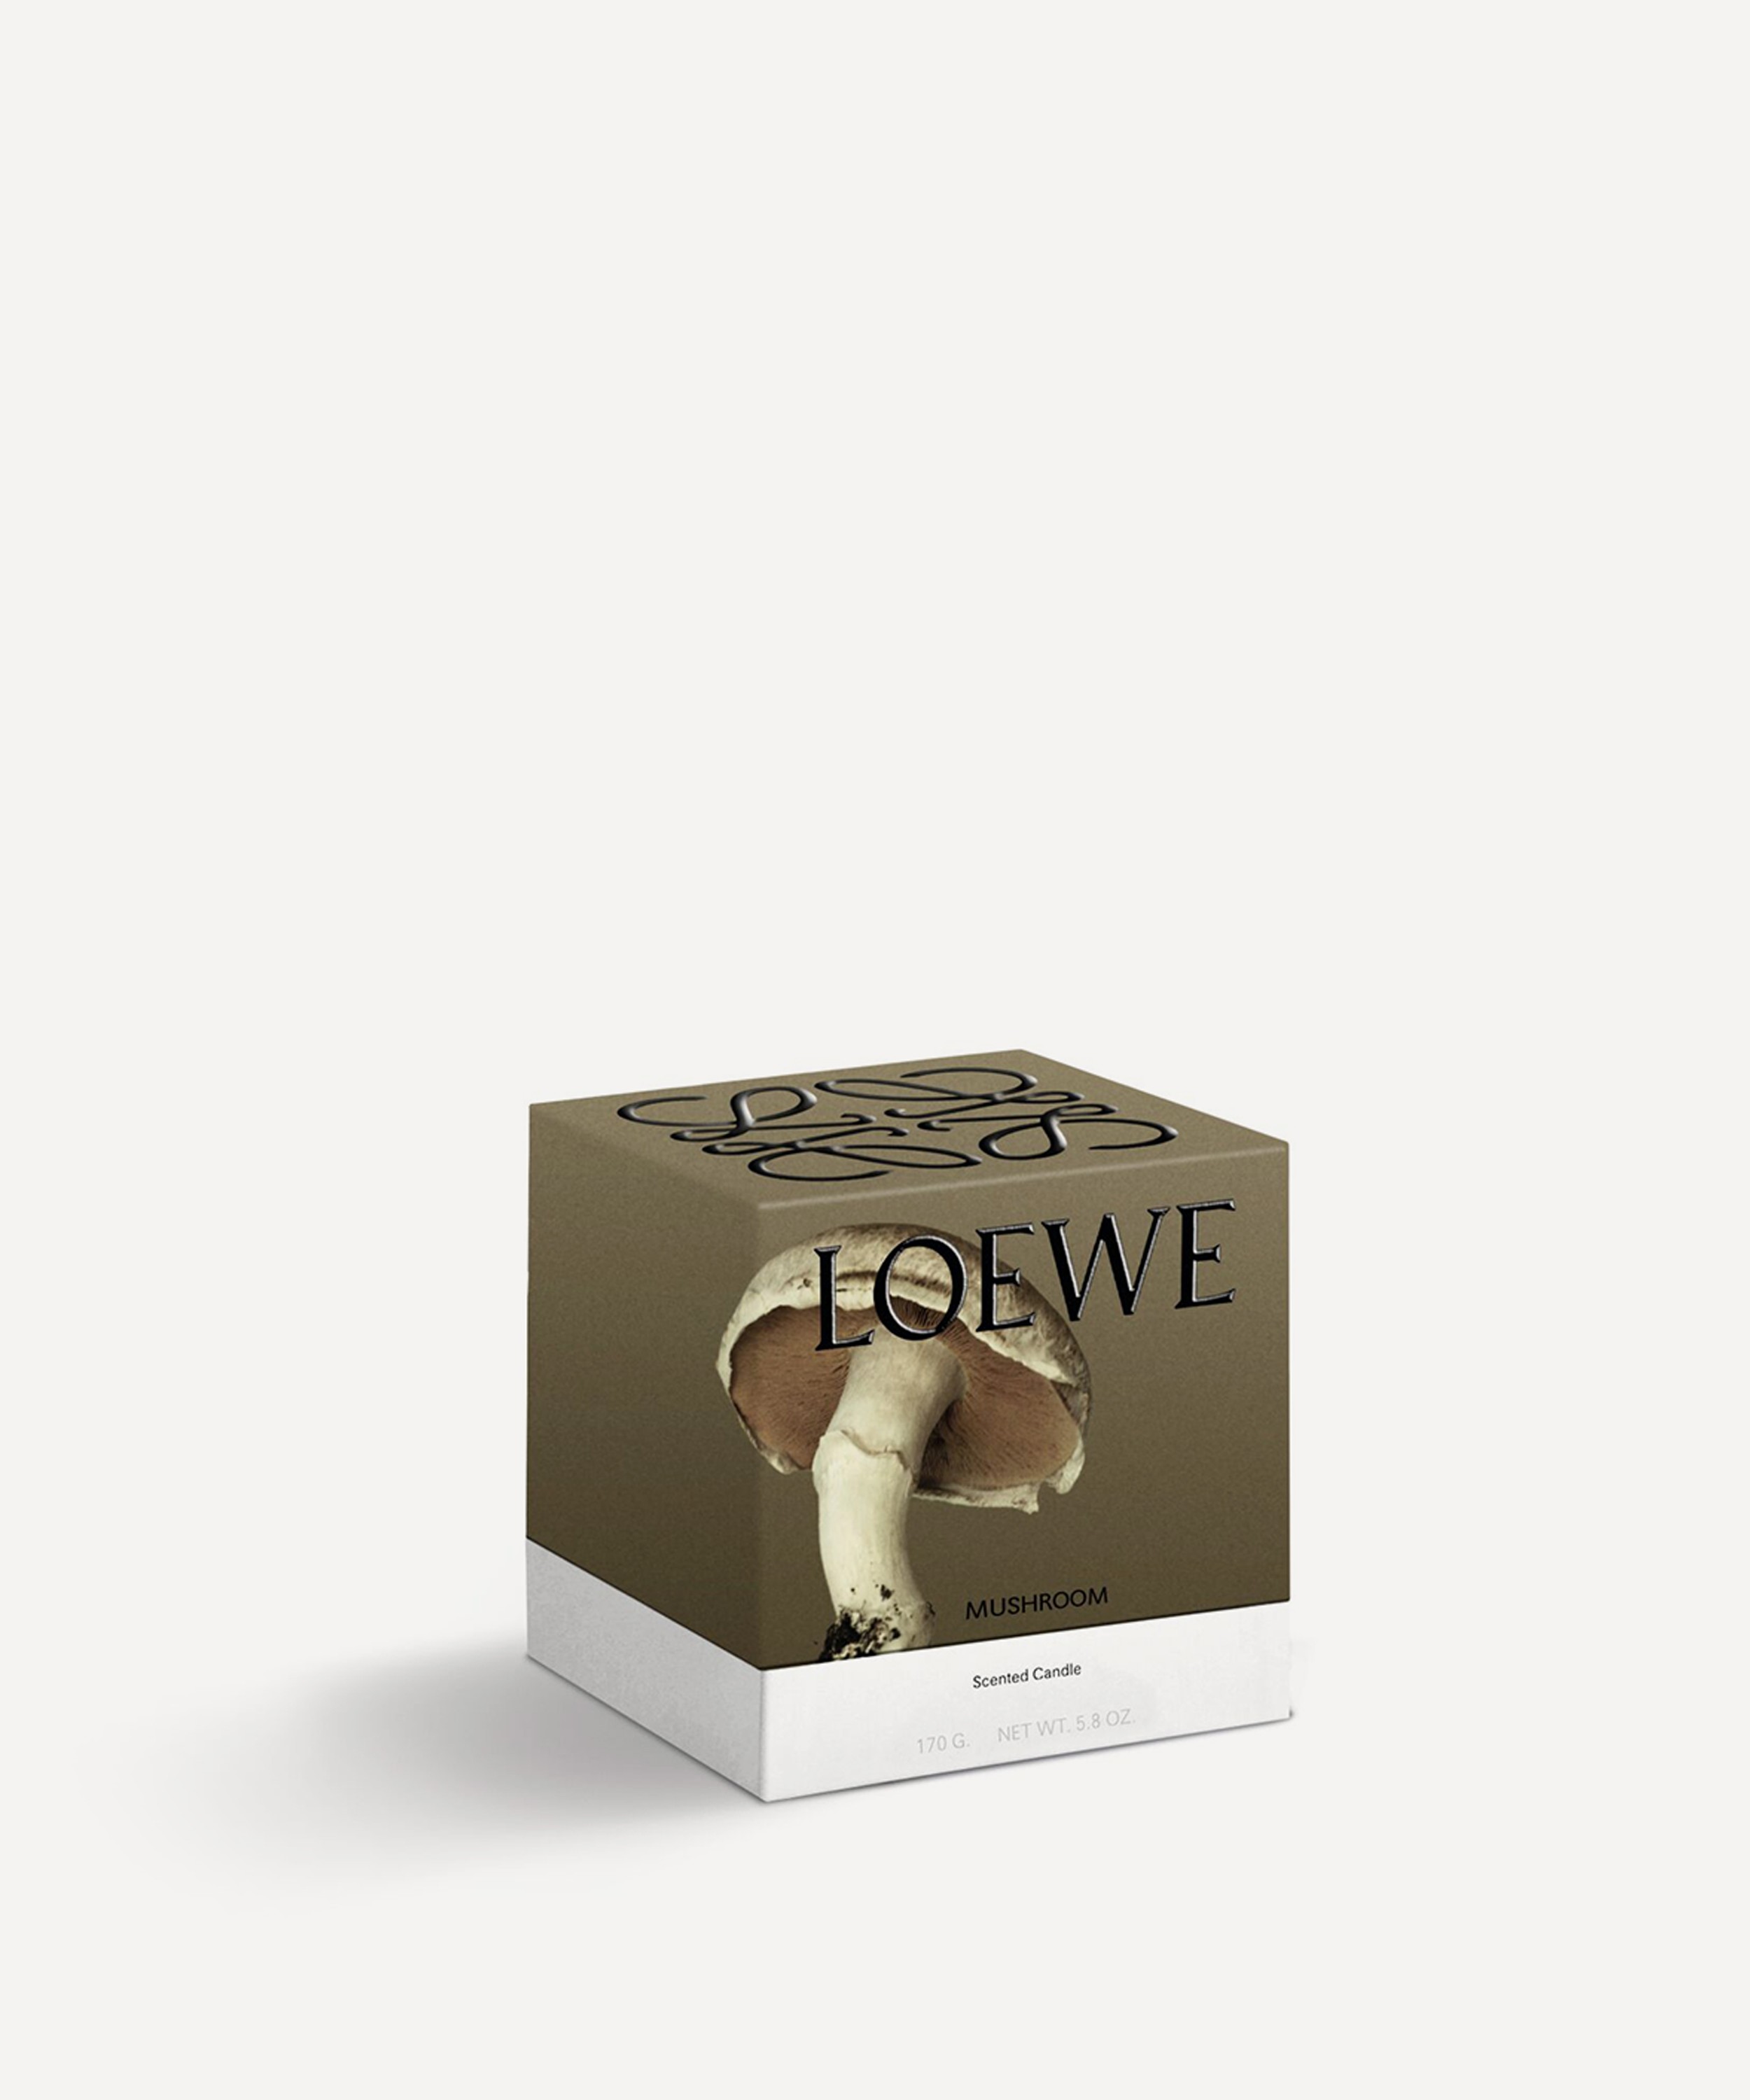 Loewe - Small Mushroom Candle 170g image number 2